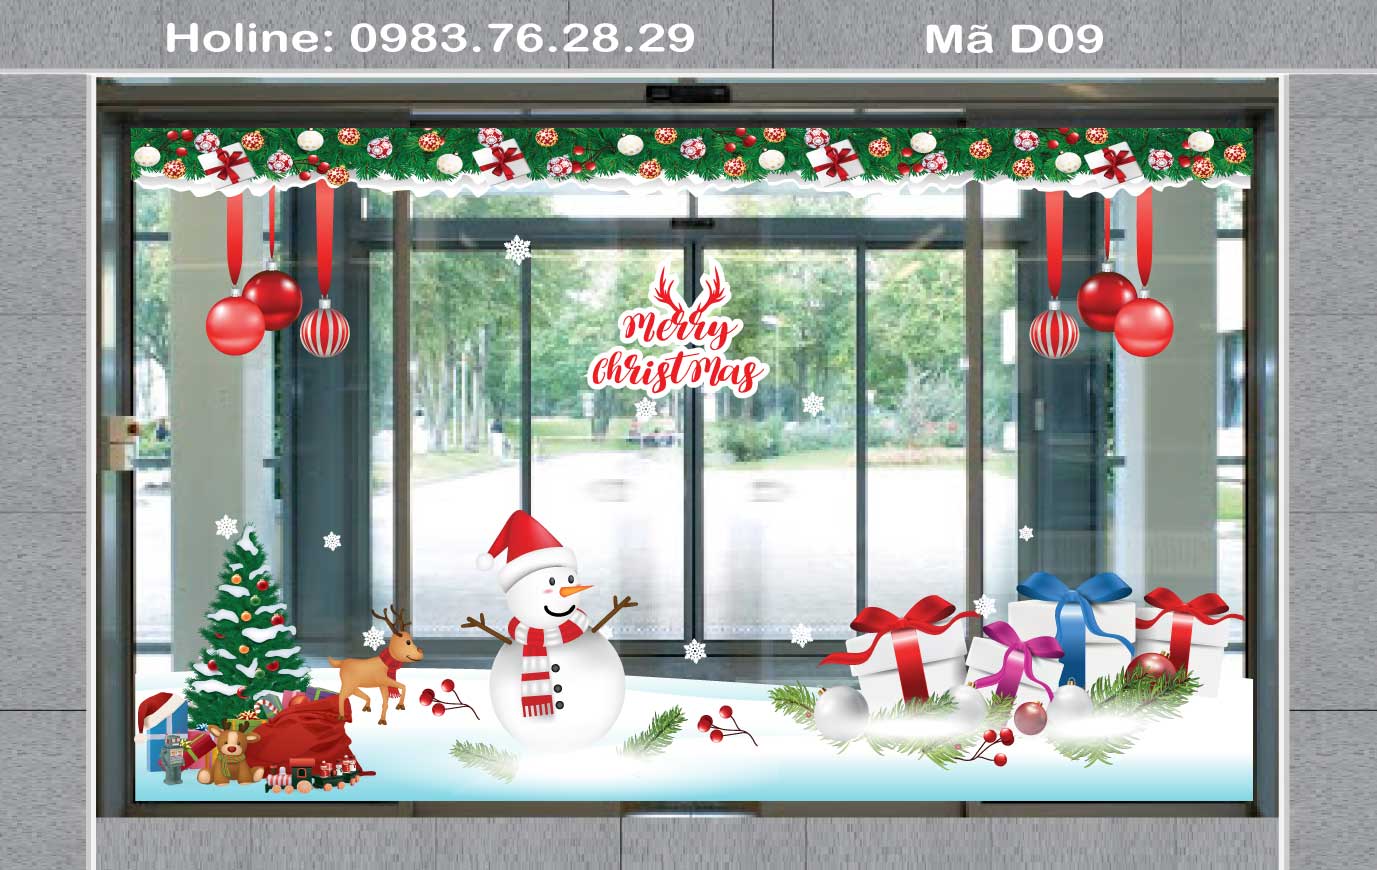 Dán Trang trí Noel trên cửa kínH cửa hàng, showroom đẹp nhất 2022 Mã - D09 